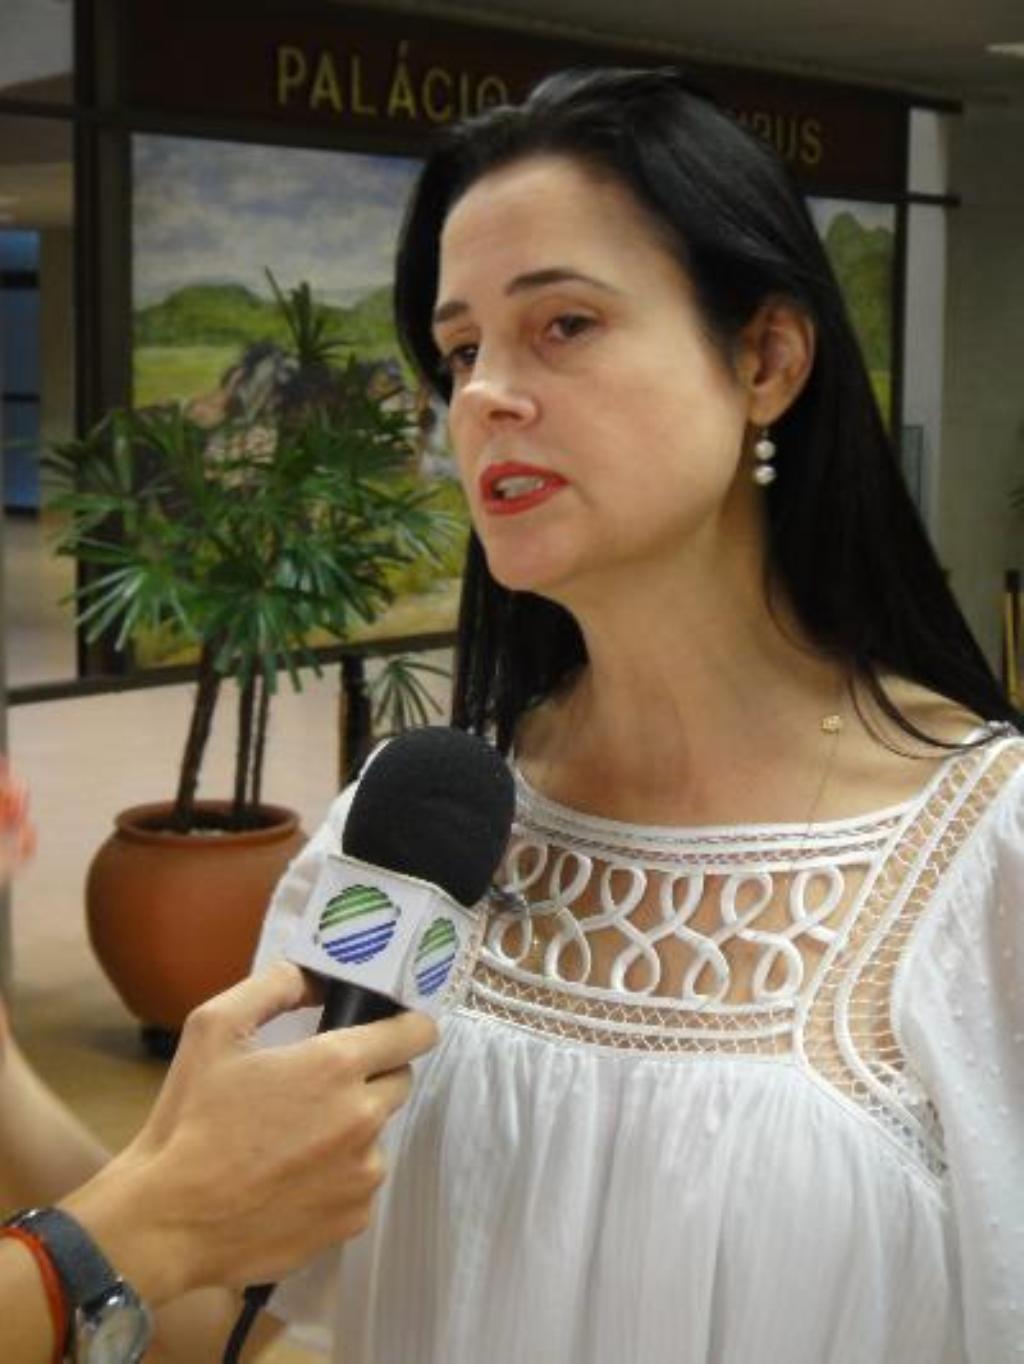 Imagem: Mara Caseiro apóia Arroyo para conselheiro do TCE